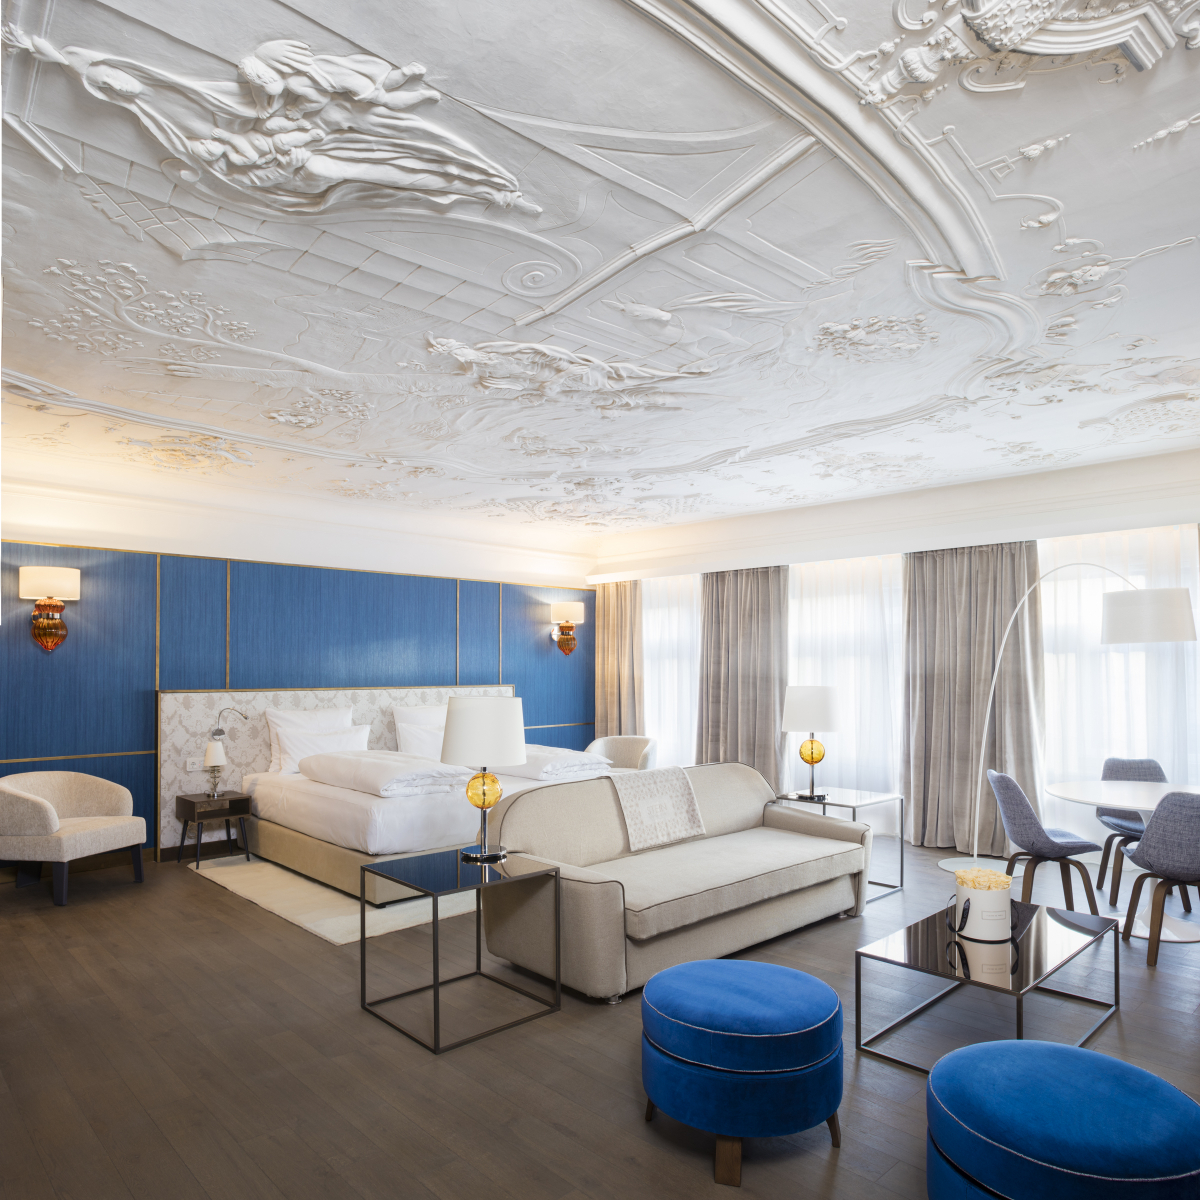 Hotel Stein, Honeymoon Suite © 2018 Edmund Barr